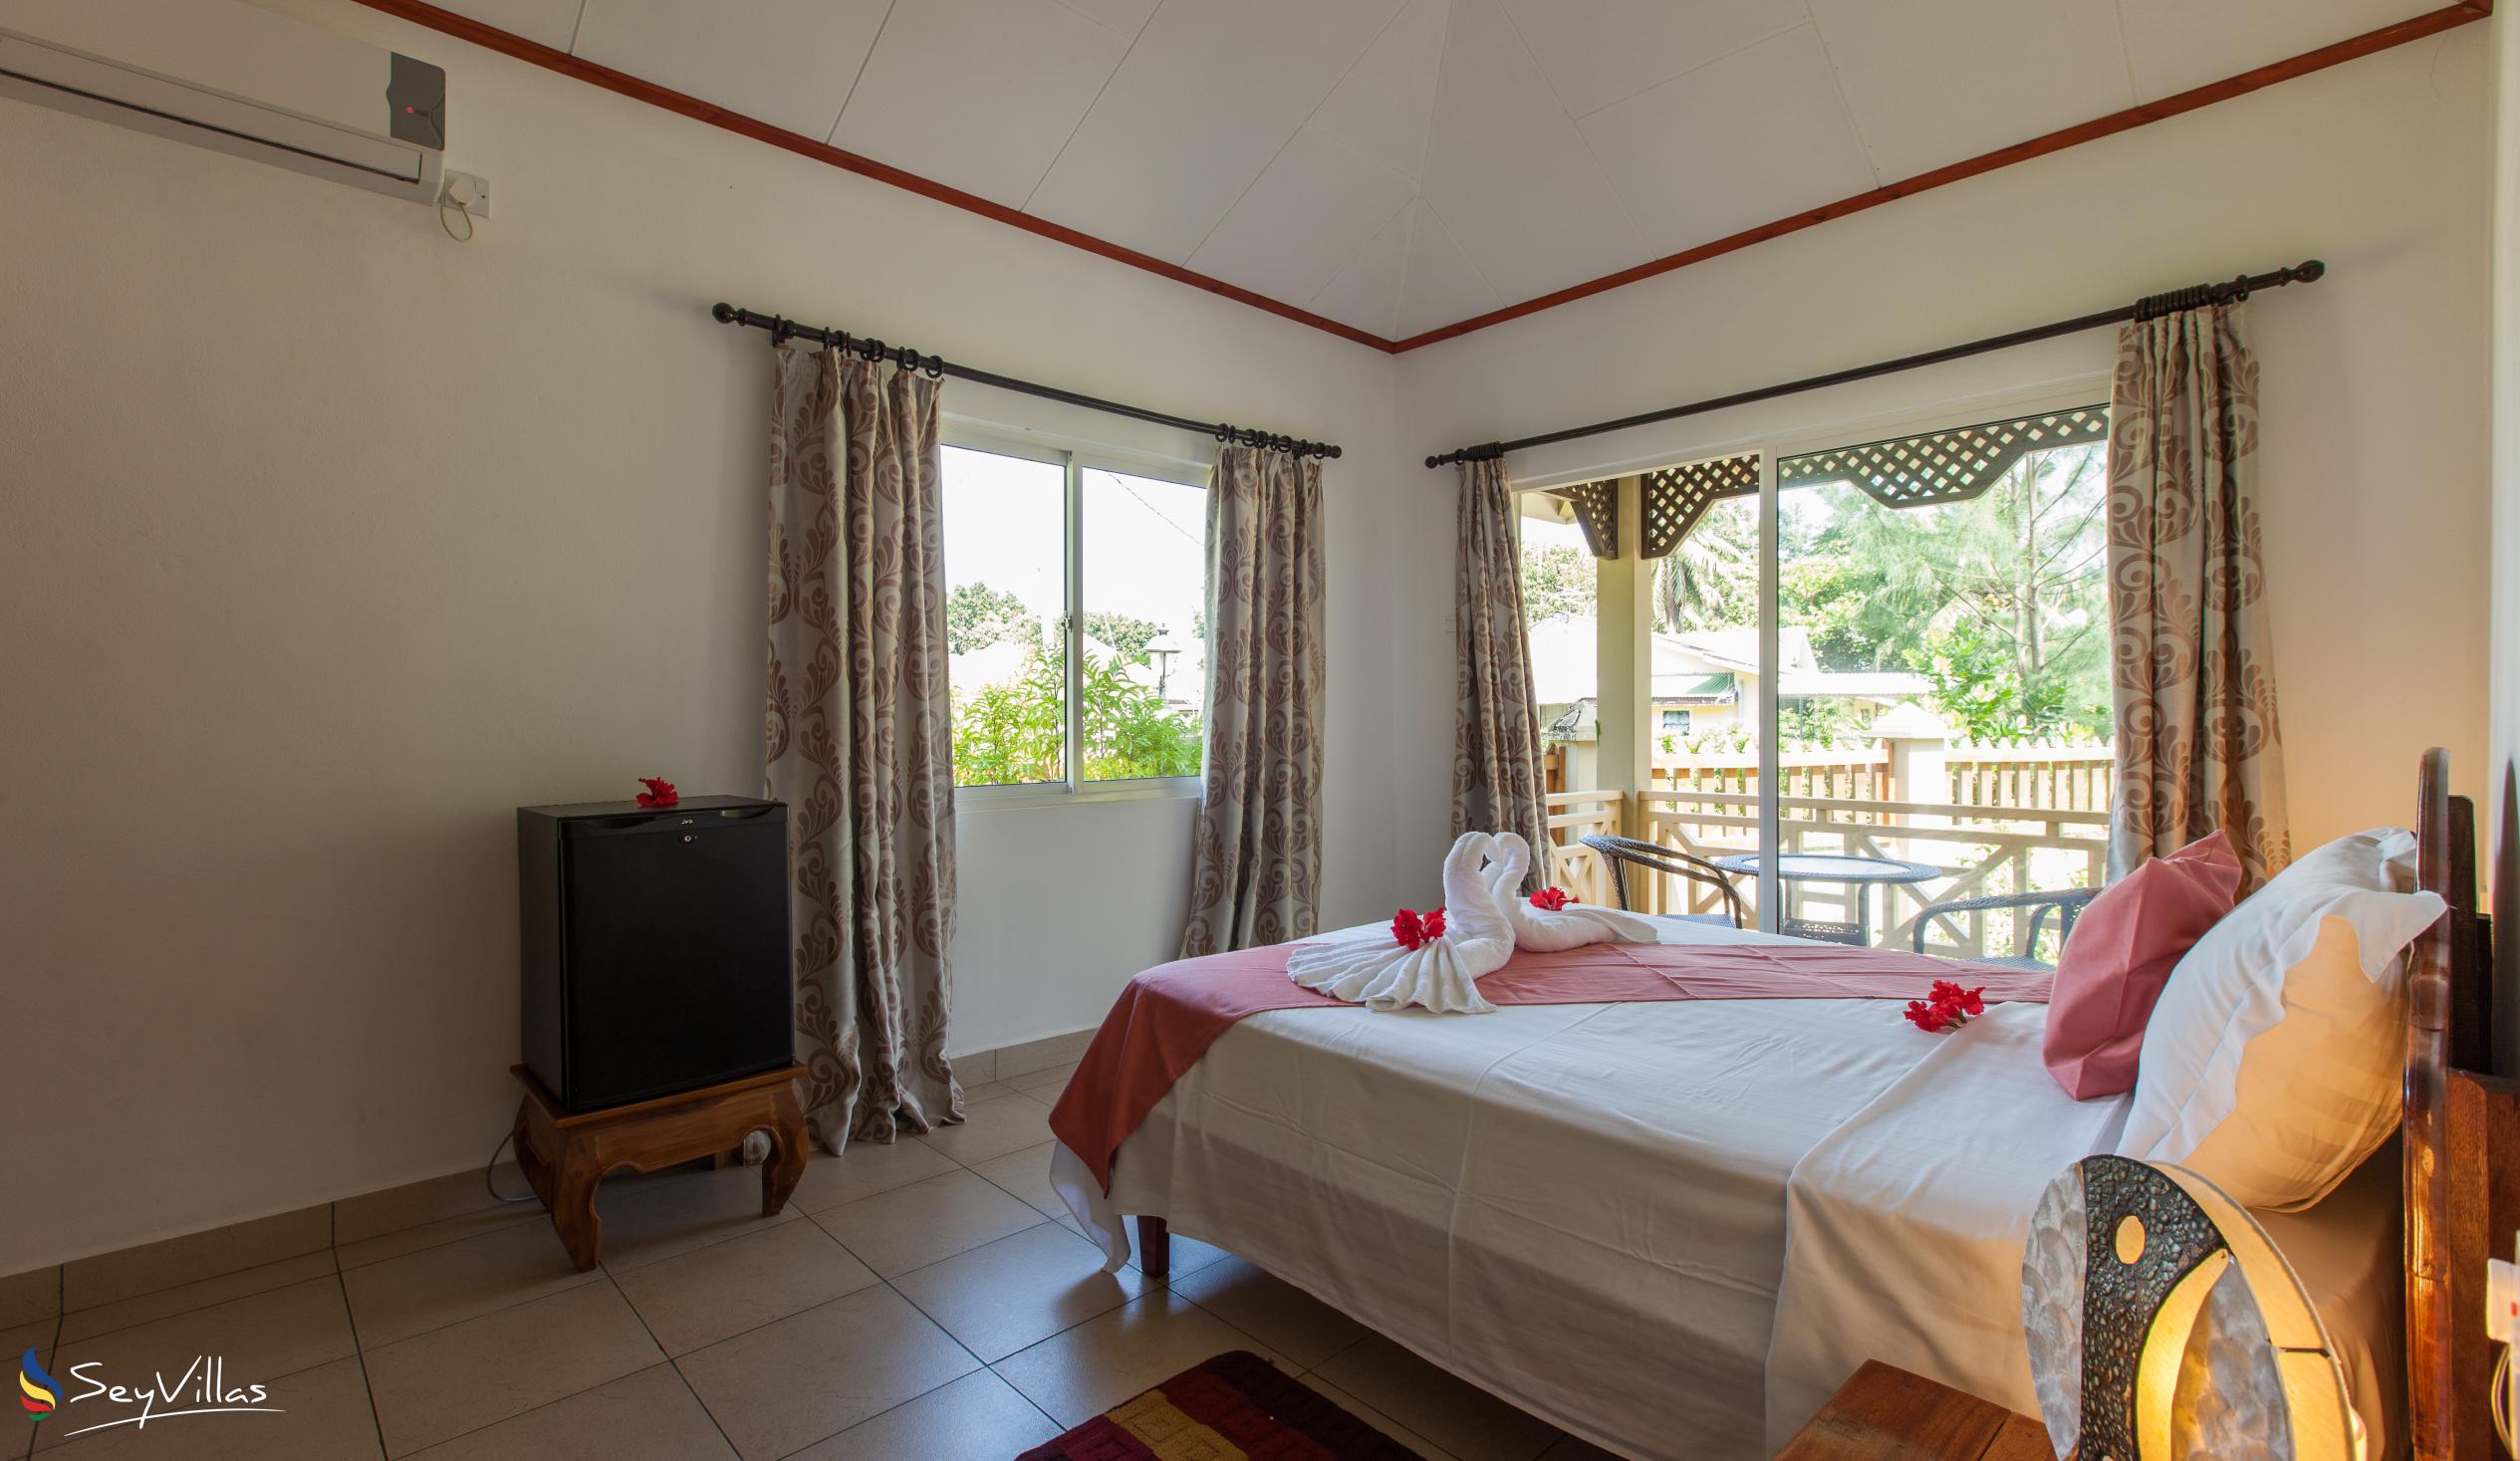 Foto 57: Hostellerie La Digue - Bungalow con 2 camere da letto - La Digue (Seychelles)